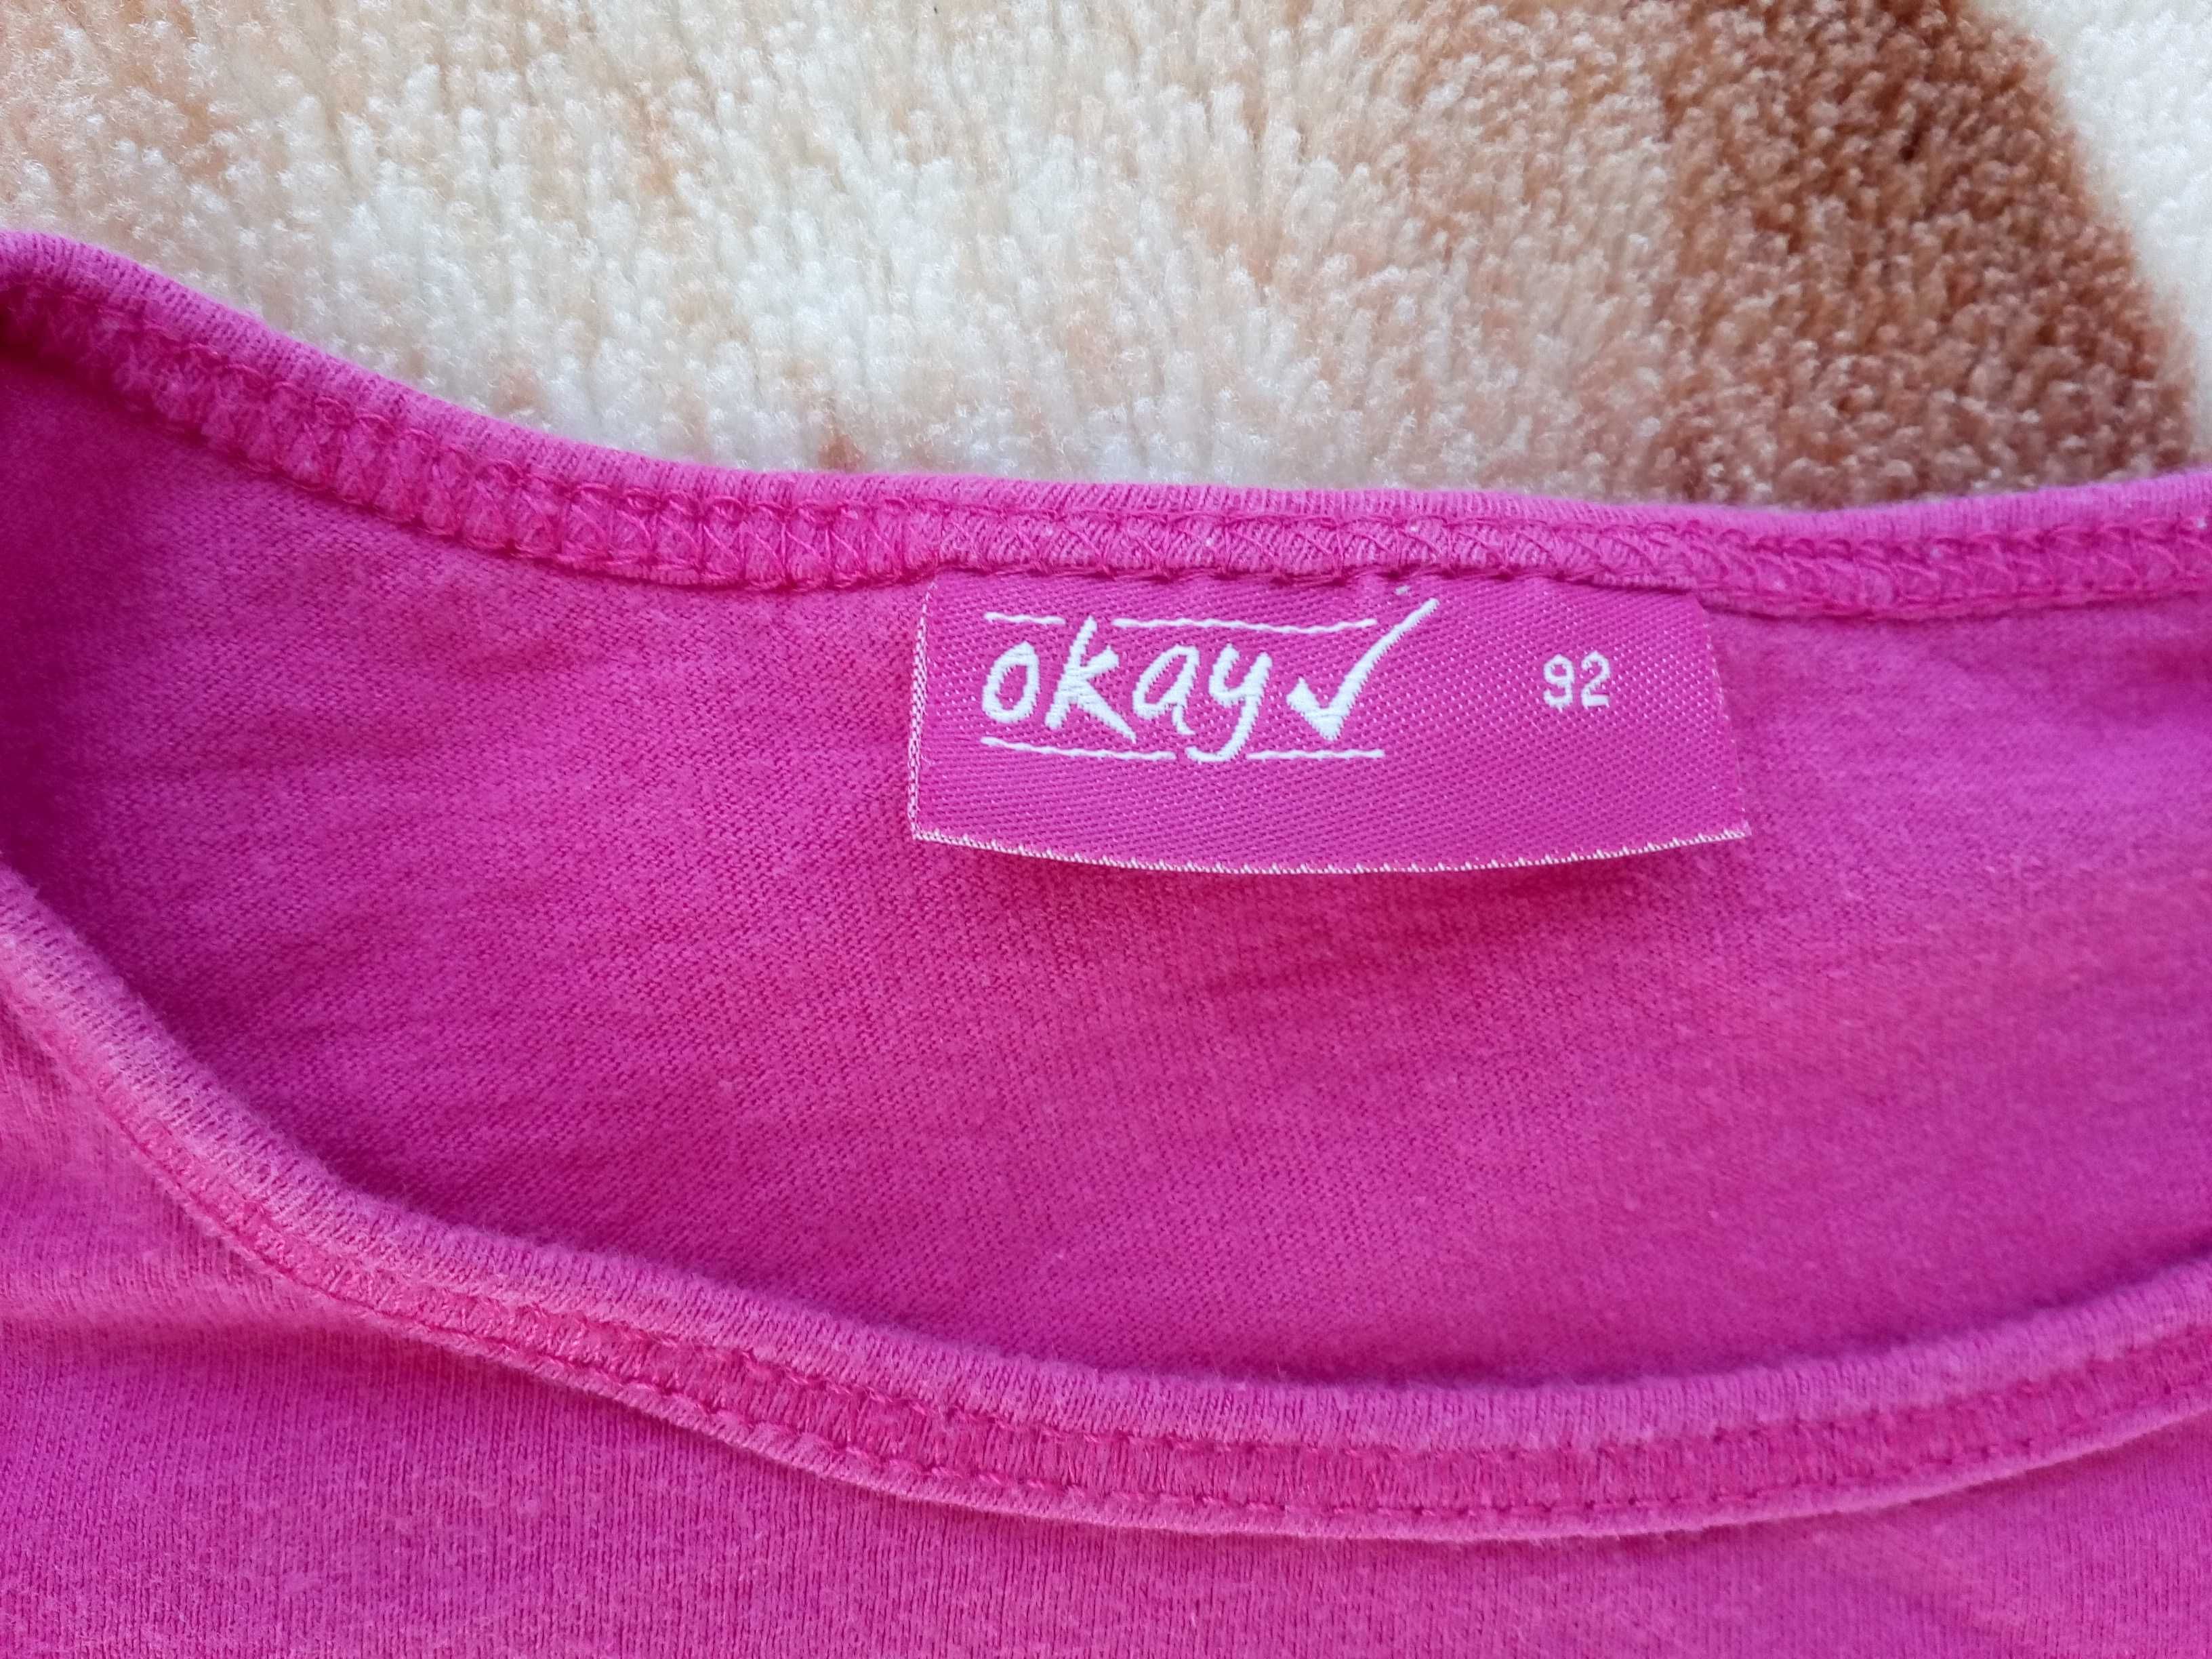 Różowa bluzka z długim rękawem Okay 92 kot kotek w kwiatki jak nowa